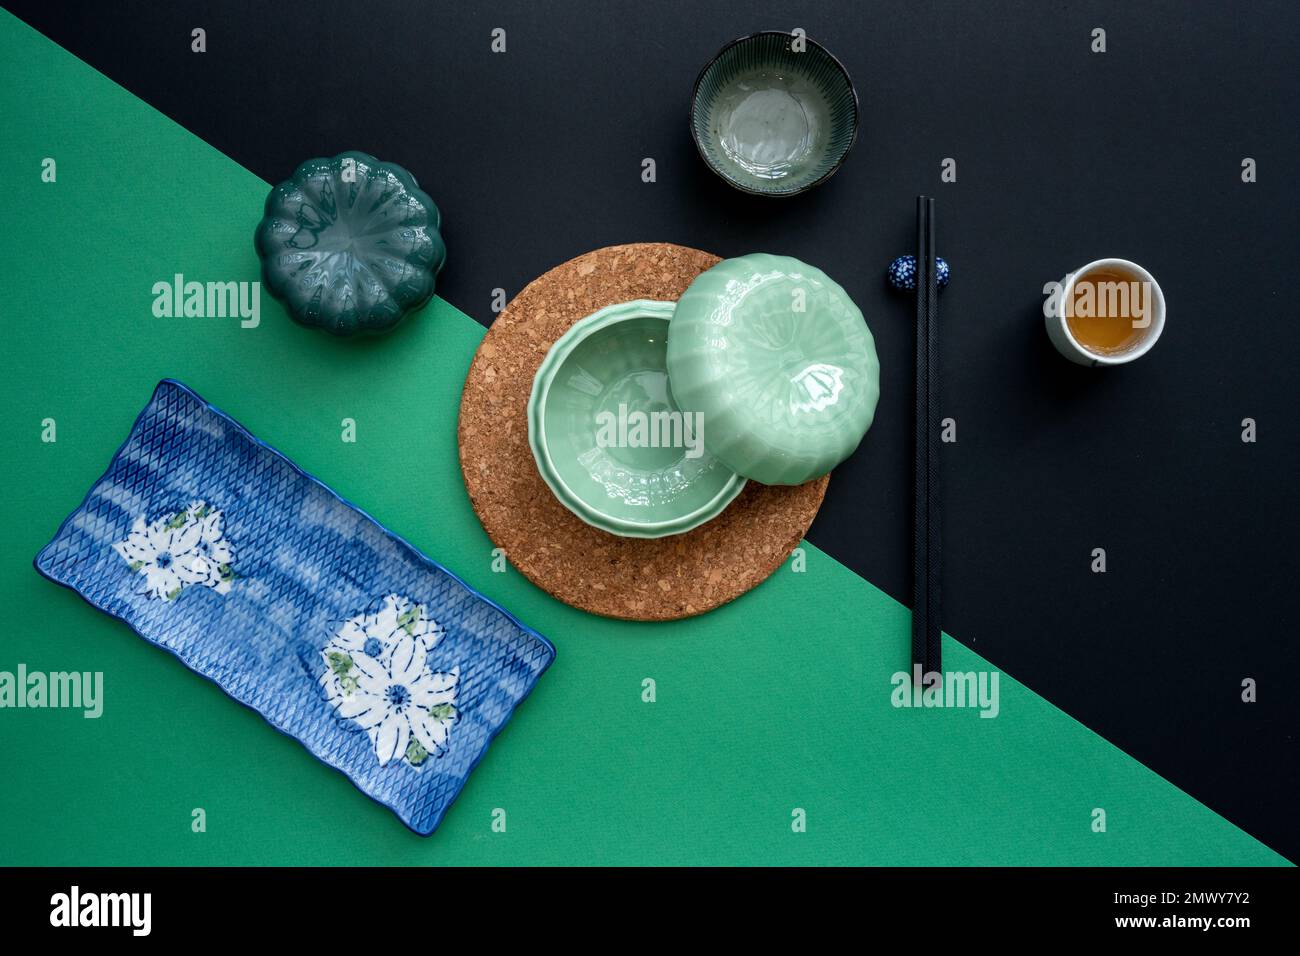 Tavolo giapponese o cinese con tradizionale tappeto da tavolo e stoviglie con sfondo verde e nero. Concetto di mangiare, mangiare, mangiare e bere. Foto Stock